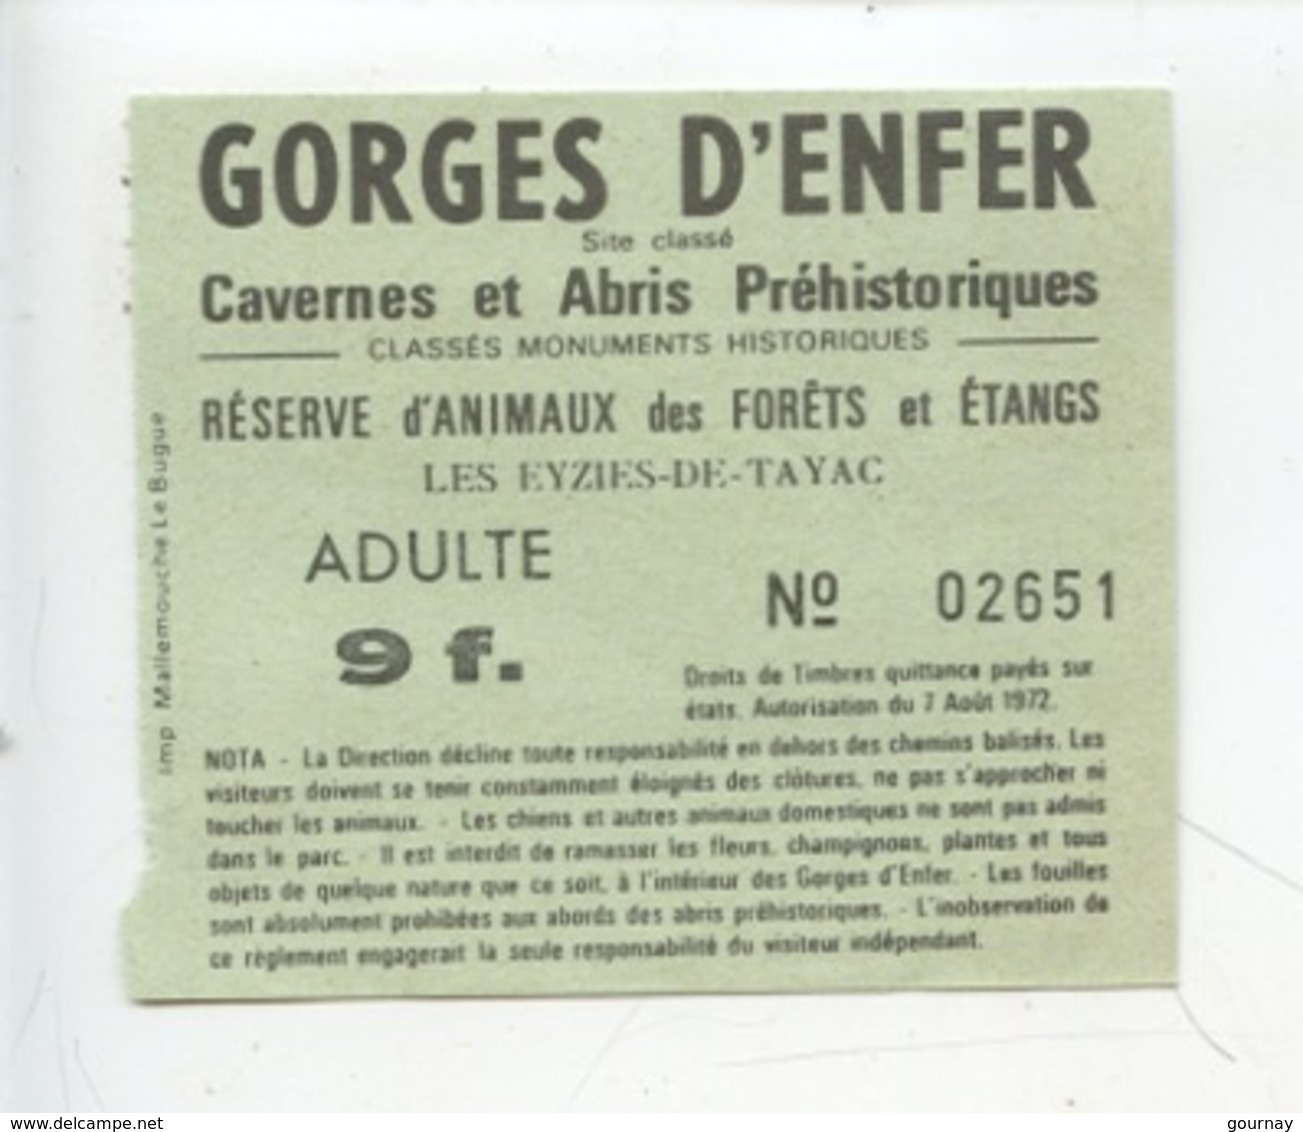 Ticket : Les Eyzies DeTayac - Gorges D'Enfer Cavernes Abris Préhistoriques - Tickets D'entrée